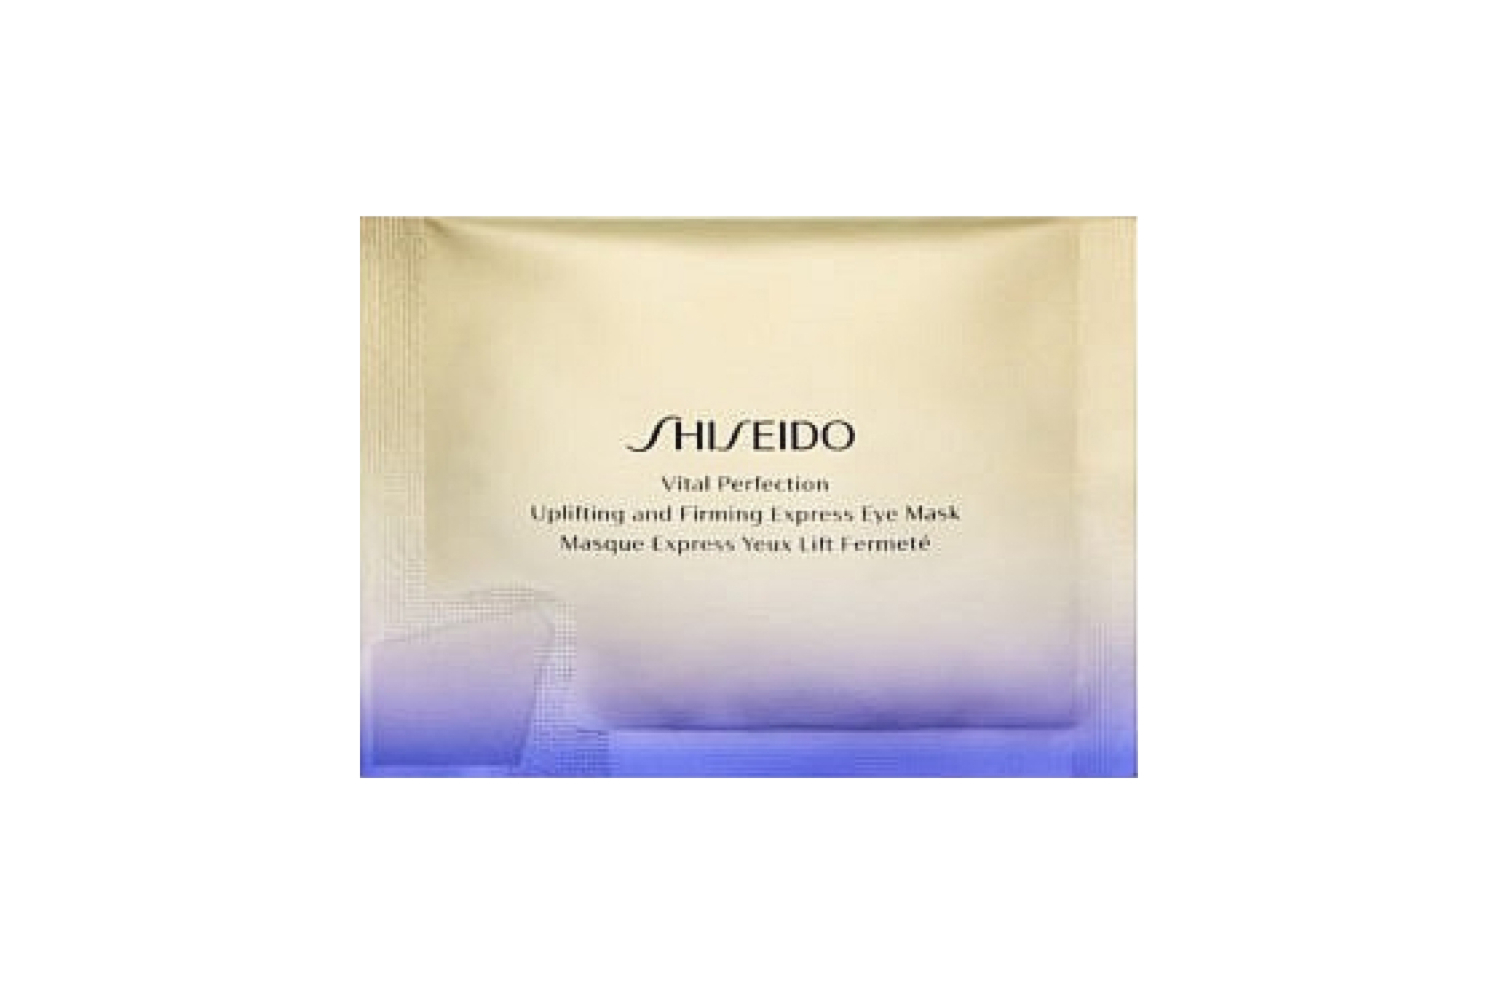 Лифтинг-маска моментального действия для кожи вокруг глаз Vital Perfection, Shiseido нейтрализует тусклый тон, темные круги и морщины благодаря технологиям TruStructiv и ReNeura Technology++, которые усиливают сенсорные сигналы внутри кожи, качество которых ухудшается с возрастом